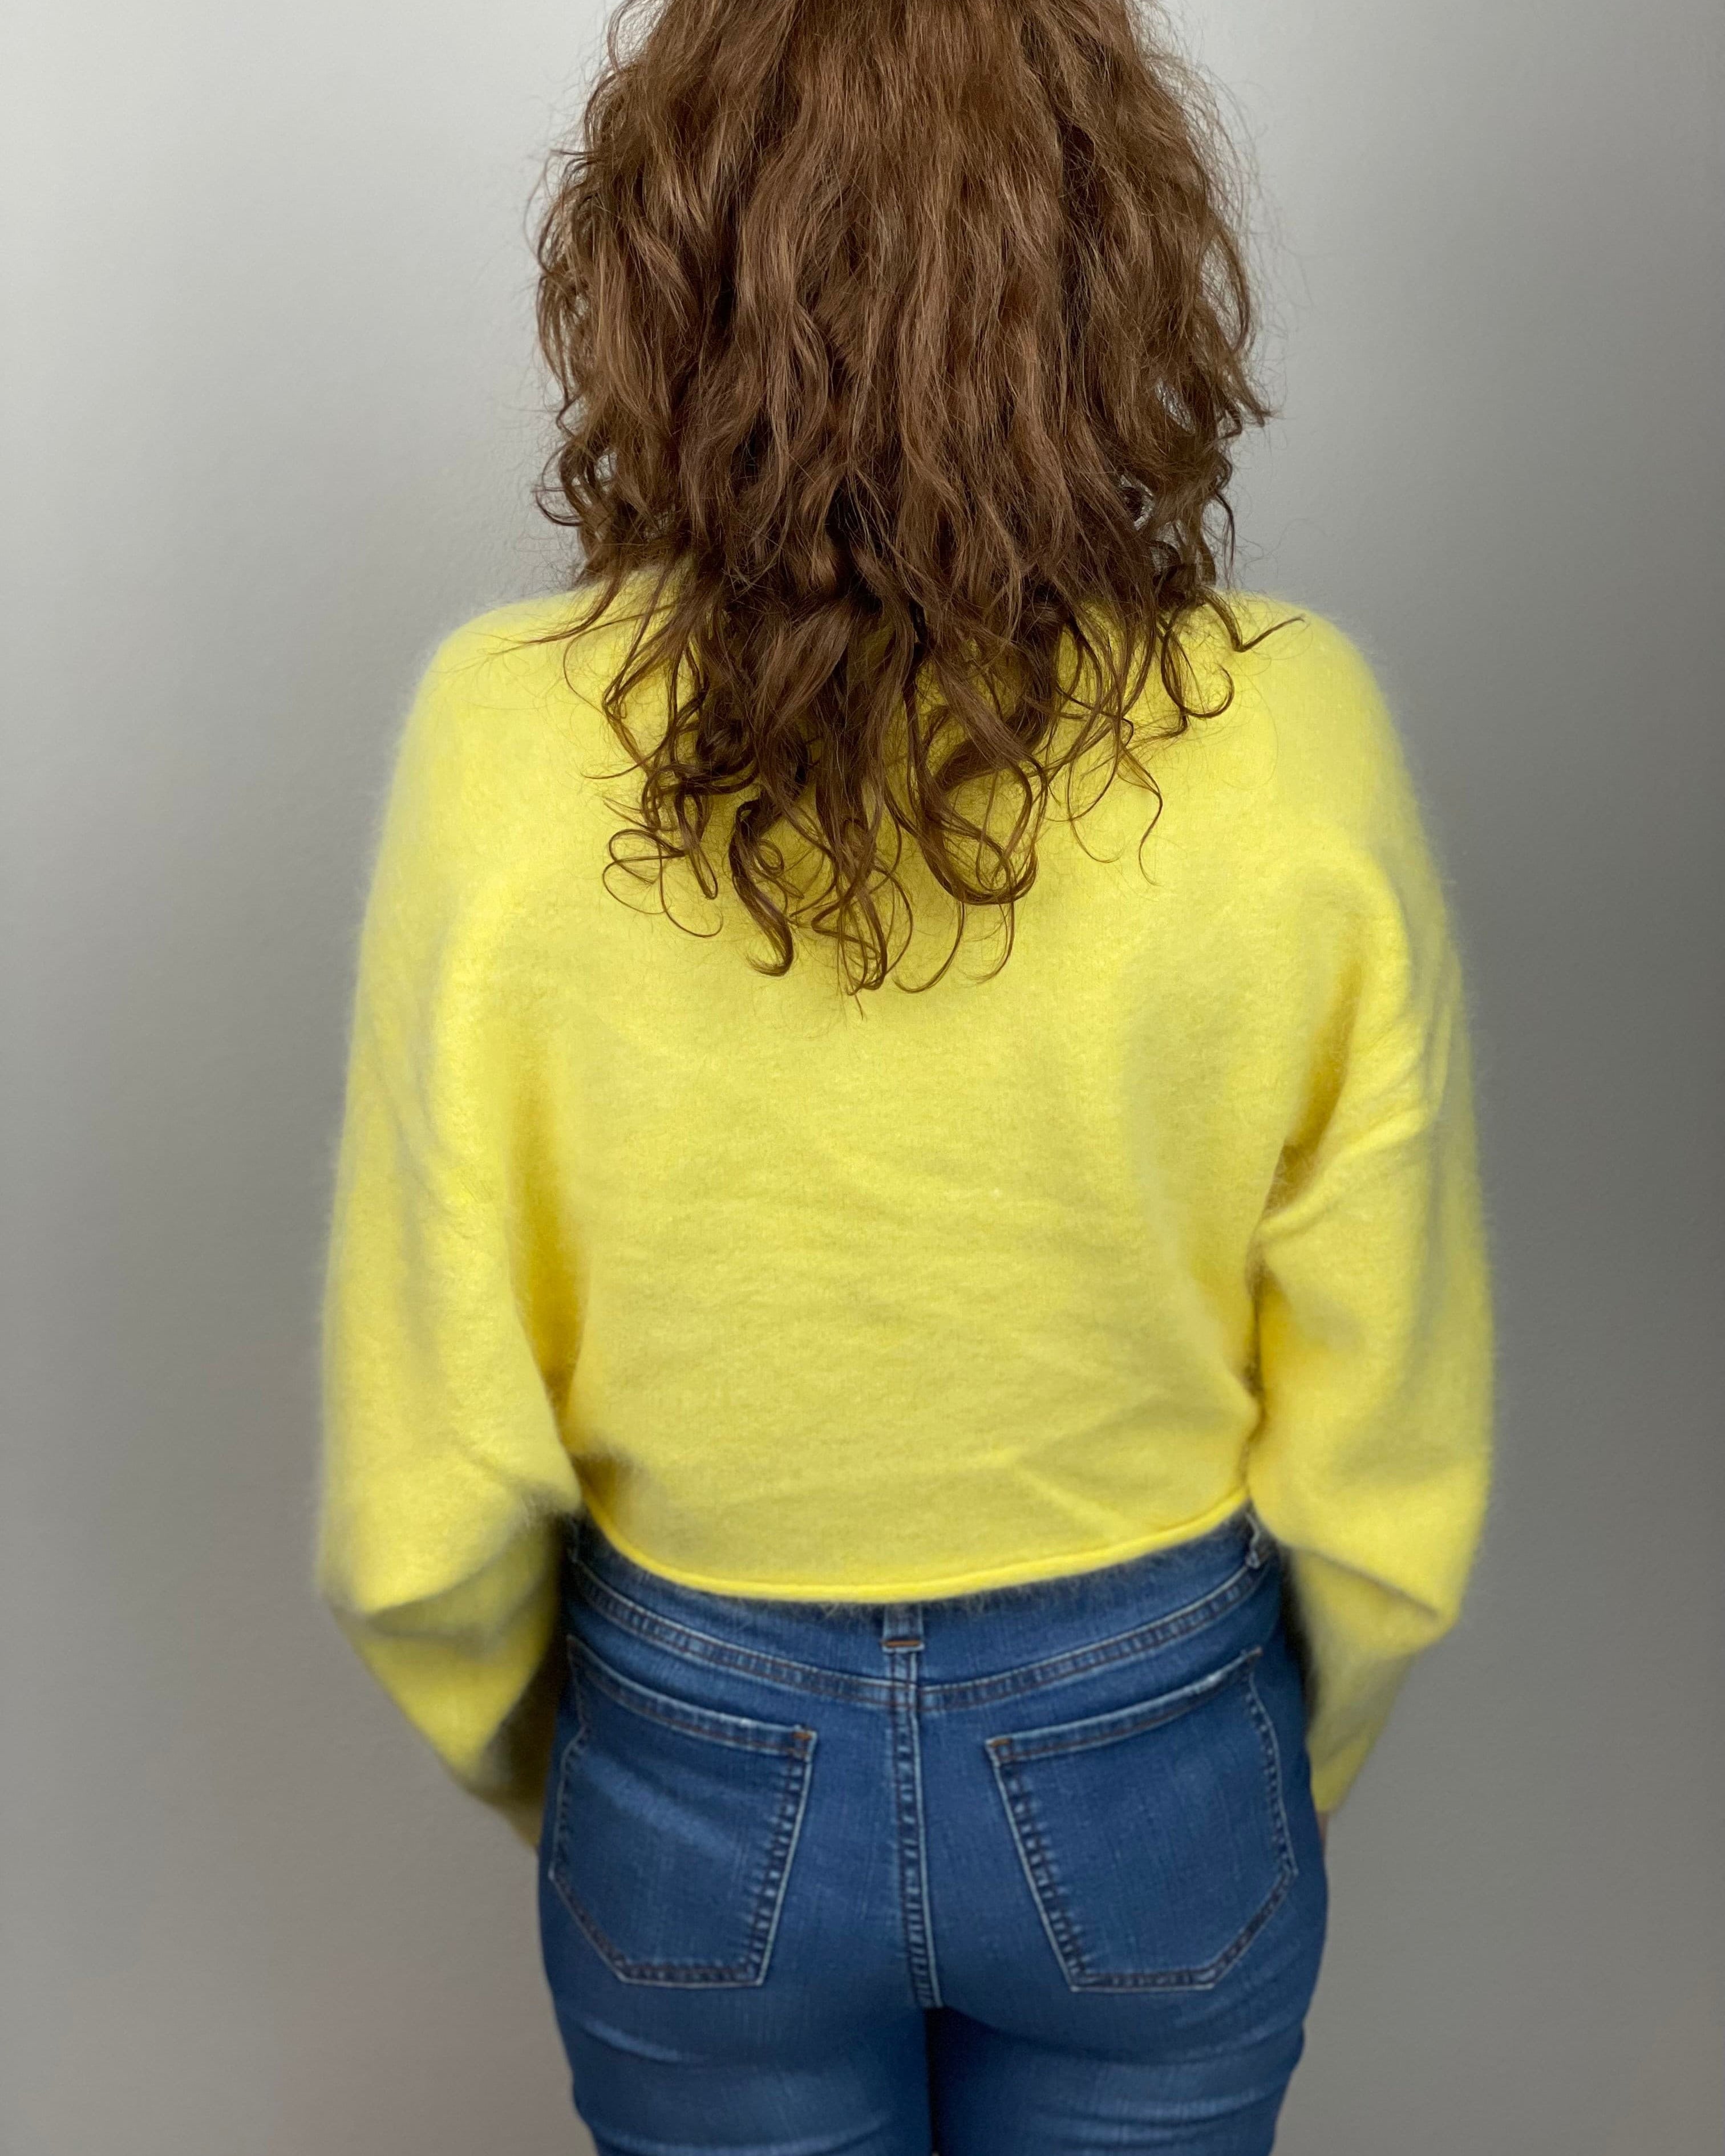 Udu Sweater in Lemon Custard.